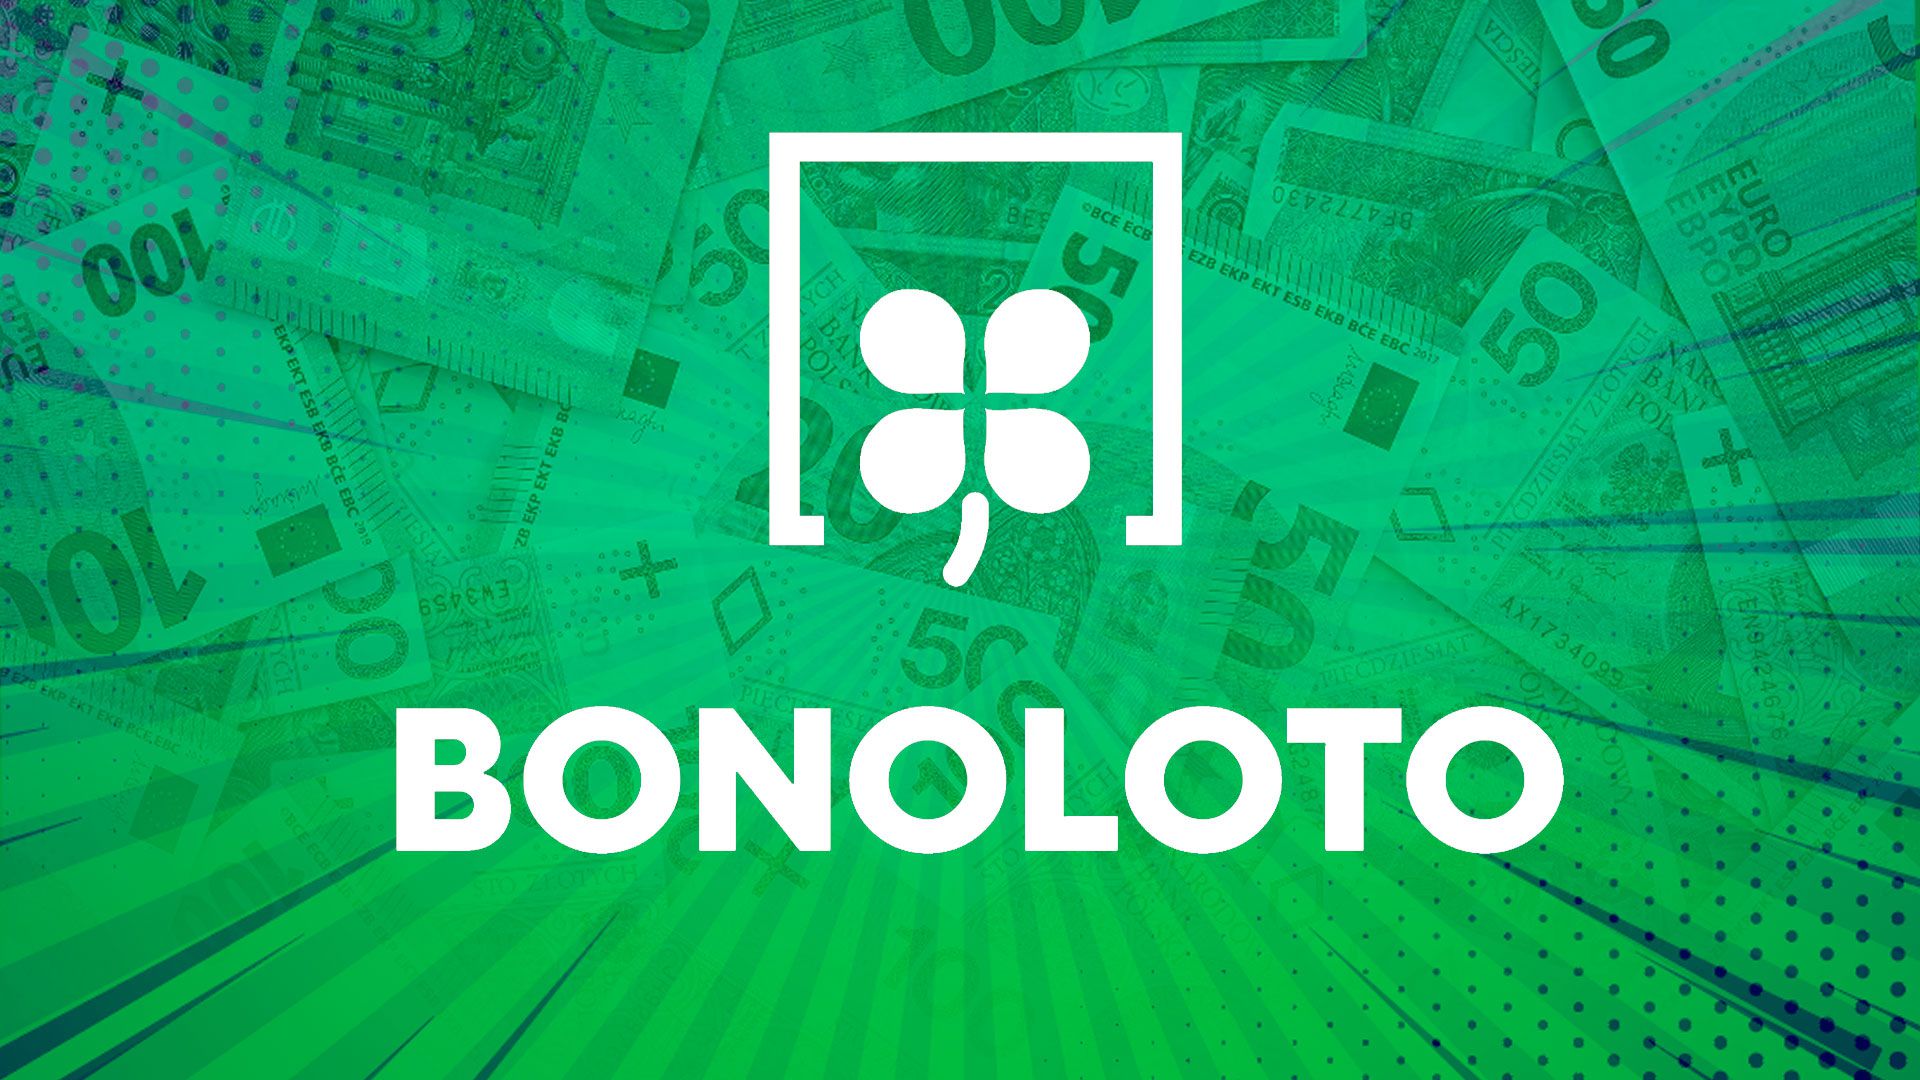 Resultados de Bonoloto: ganadores y números premiados